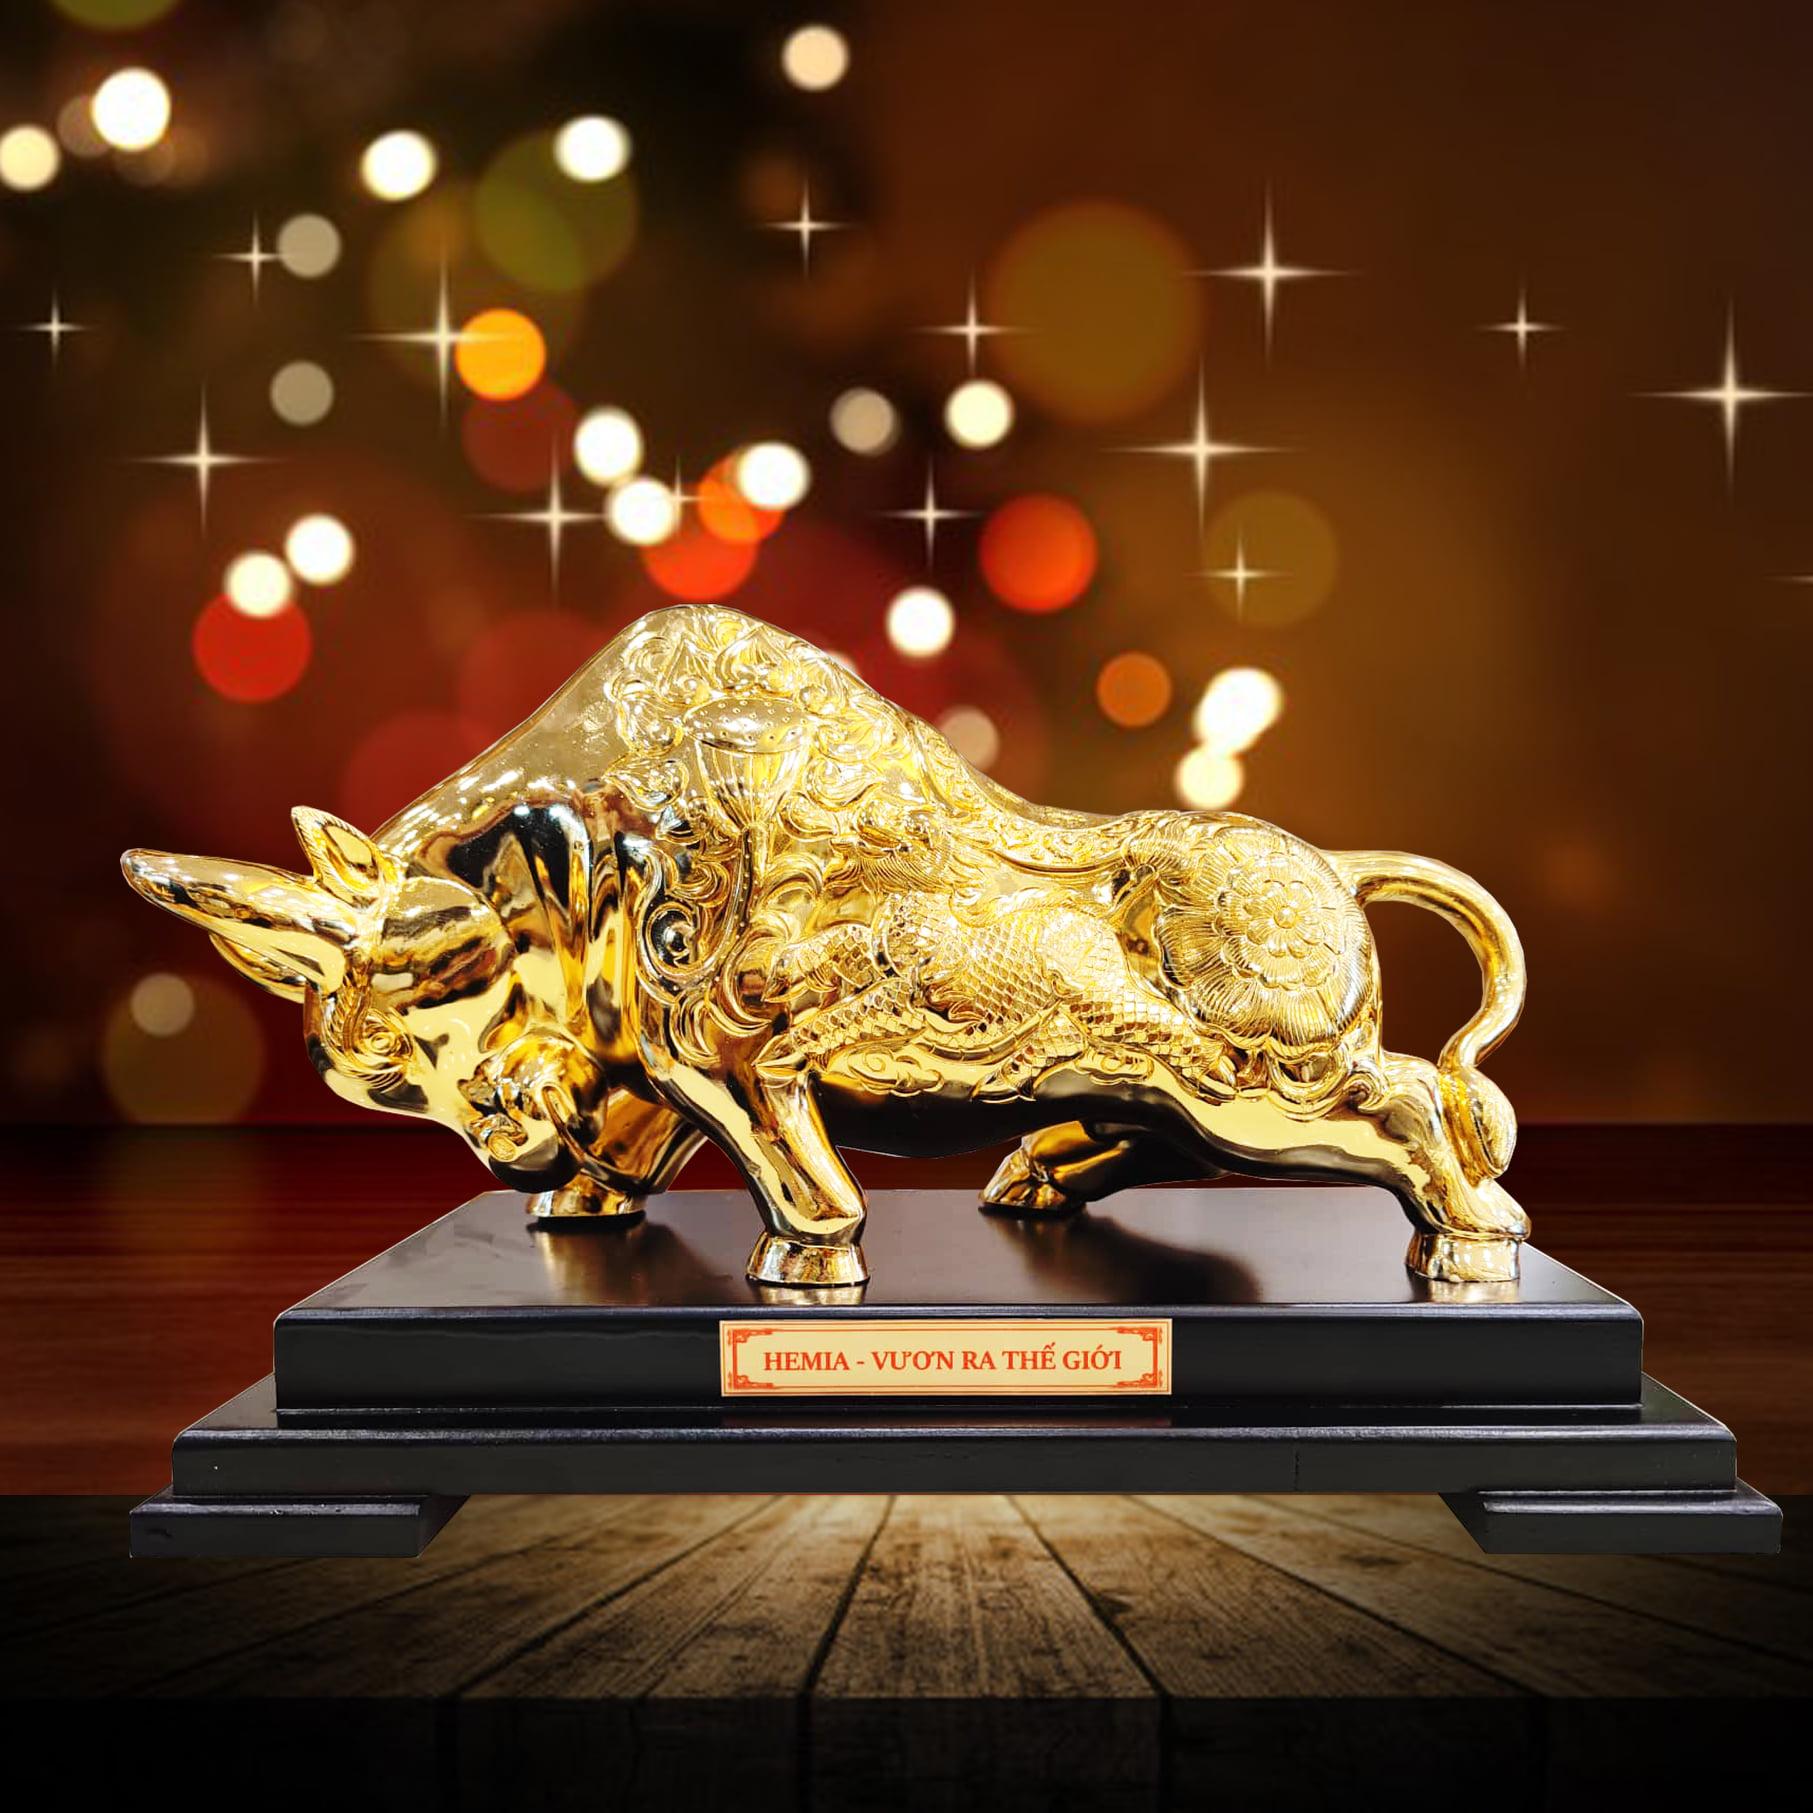 King Gold Art tiết lộ bí mật về tượng bò tài chính khiến doanh nhân mê mẩn